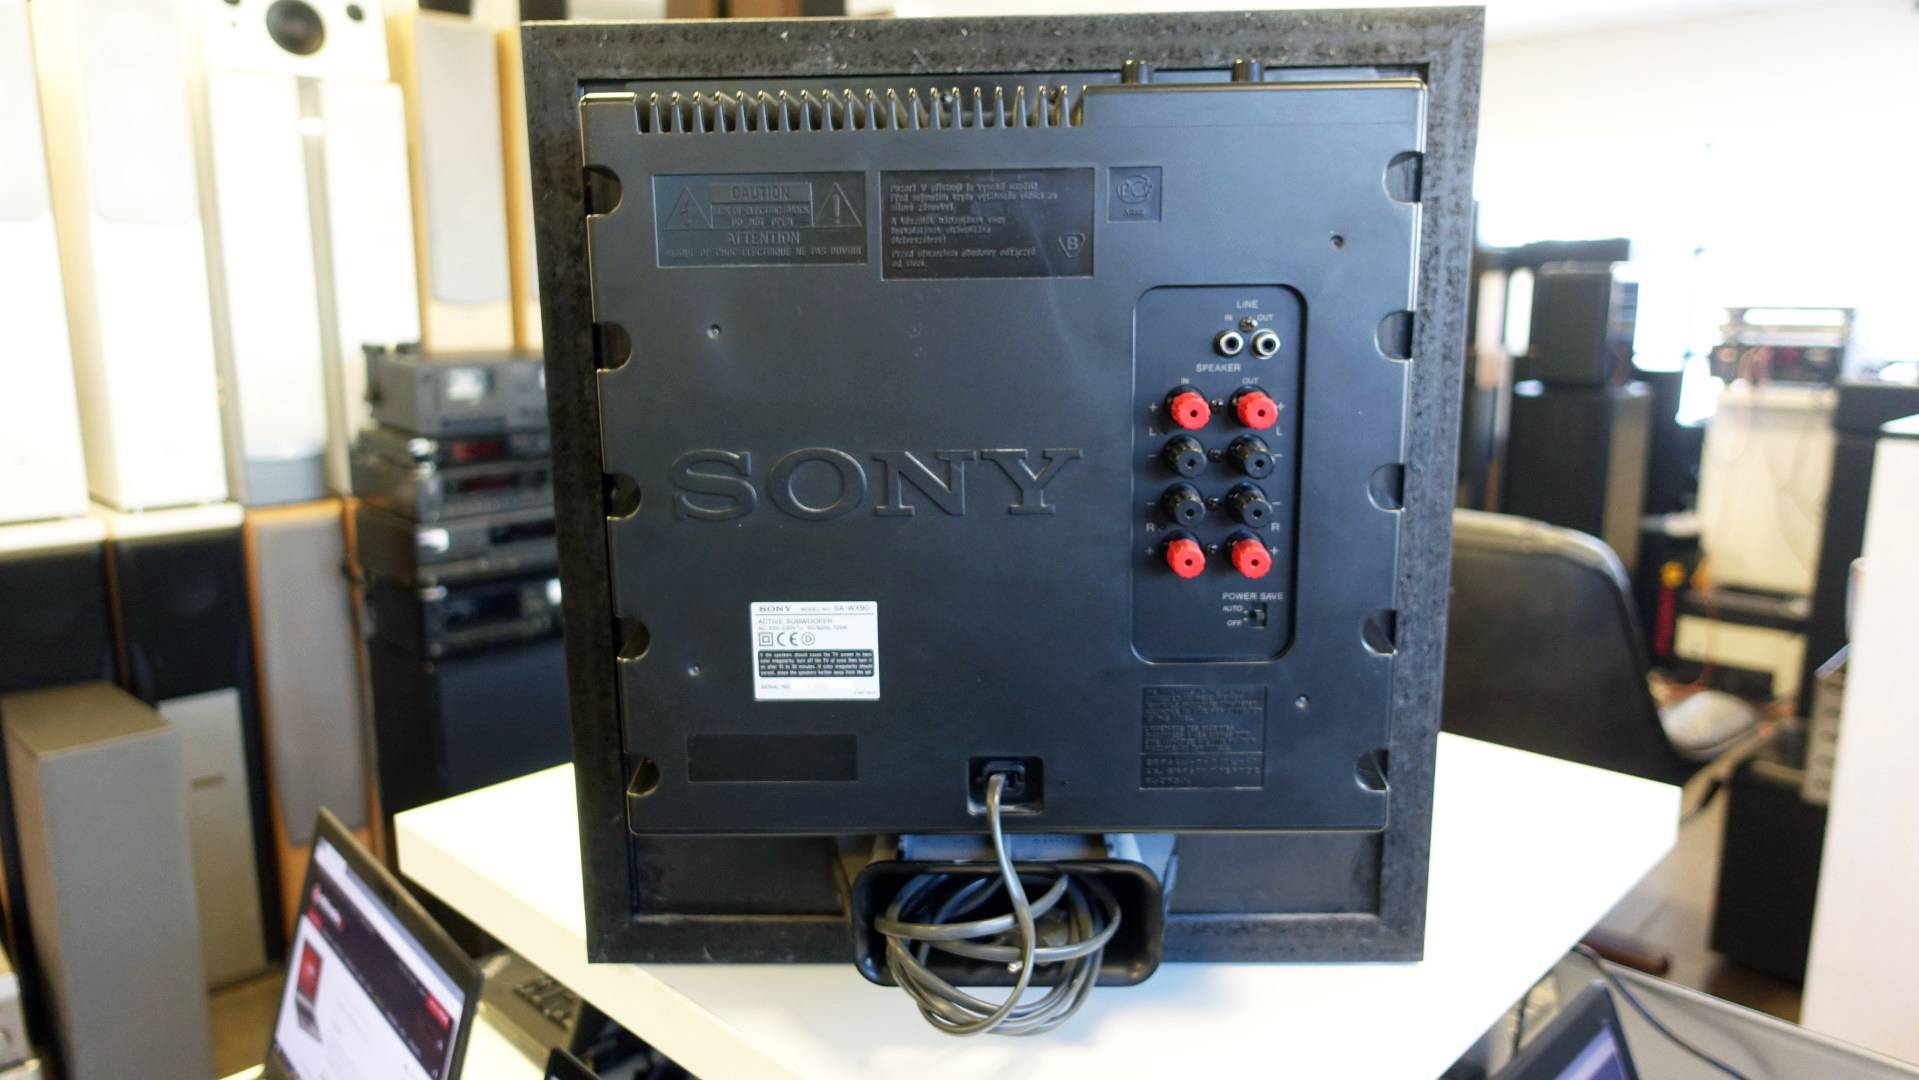 Sony SA-WX90